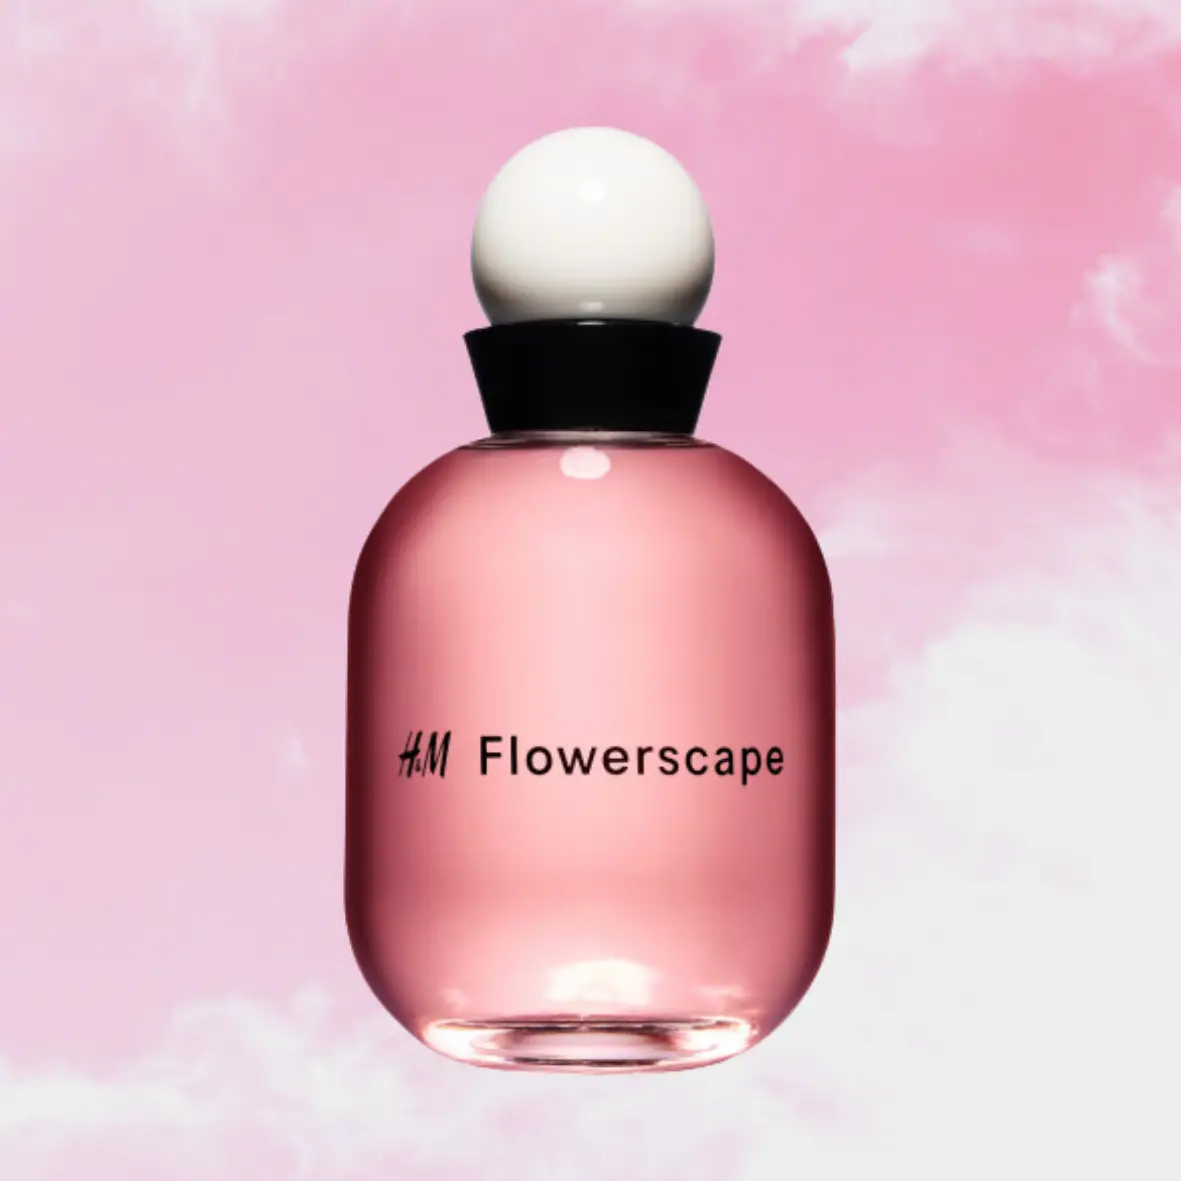 Nước hoa hương hoa đào ngọt ngào nhất của H&M Flowerscape